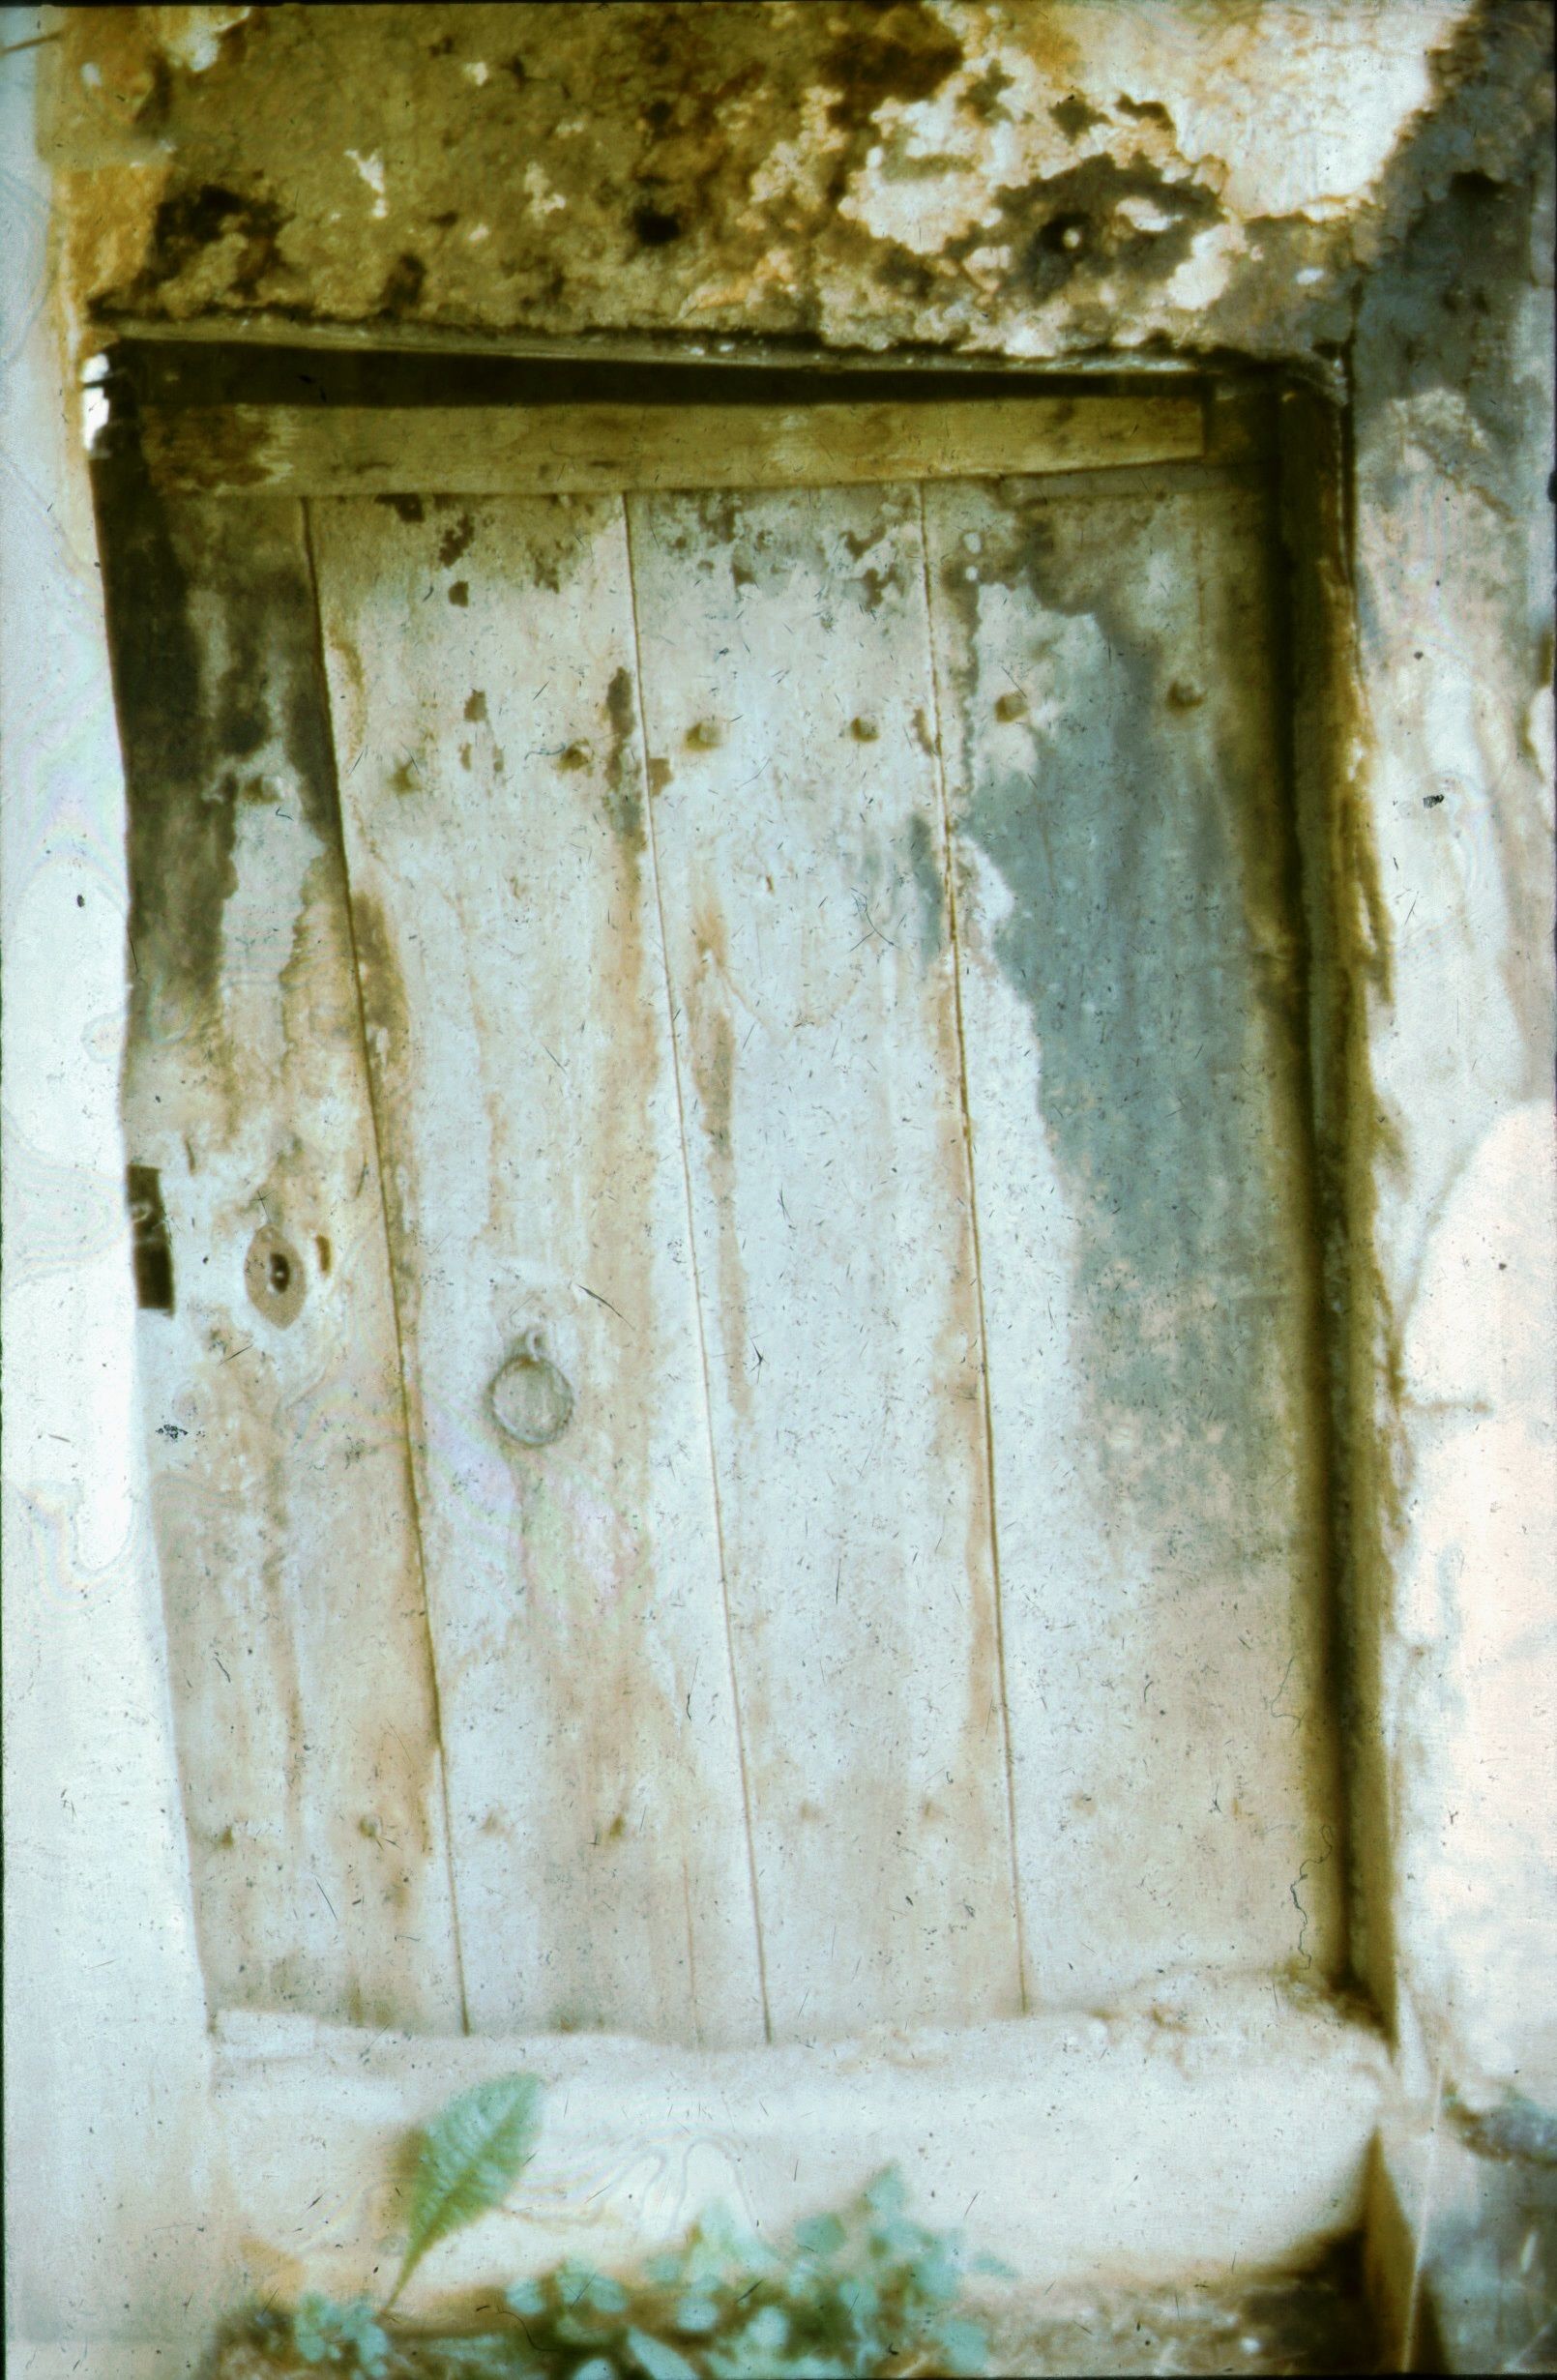 Kamoraajtó a pitar felől, Pátró (Rippl-Rónai Múzeum CC BY-NC-ND)